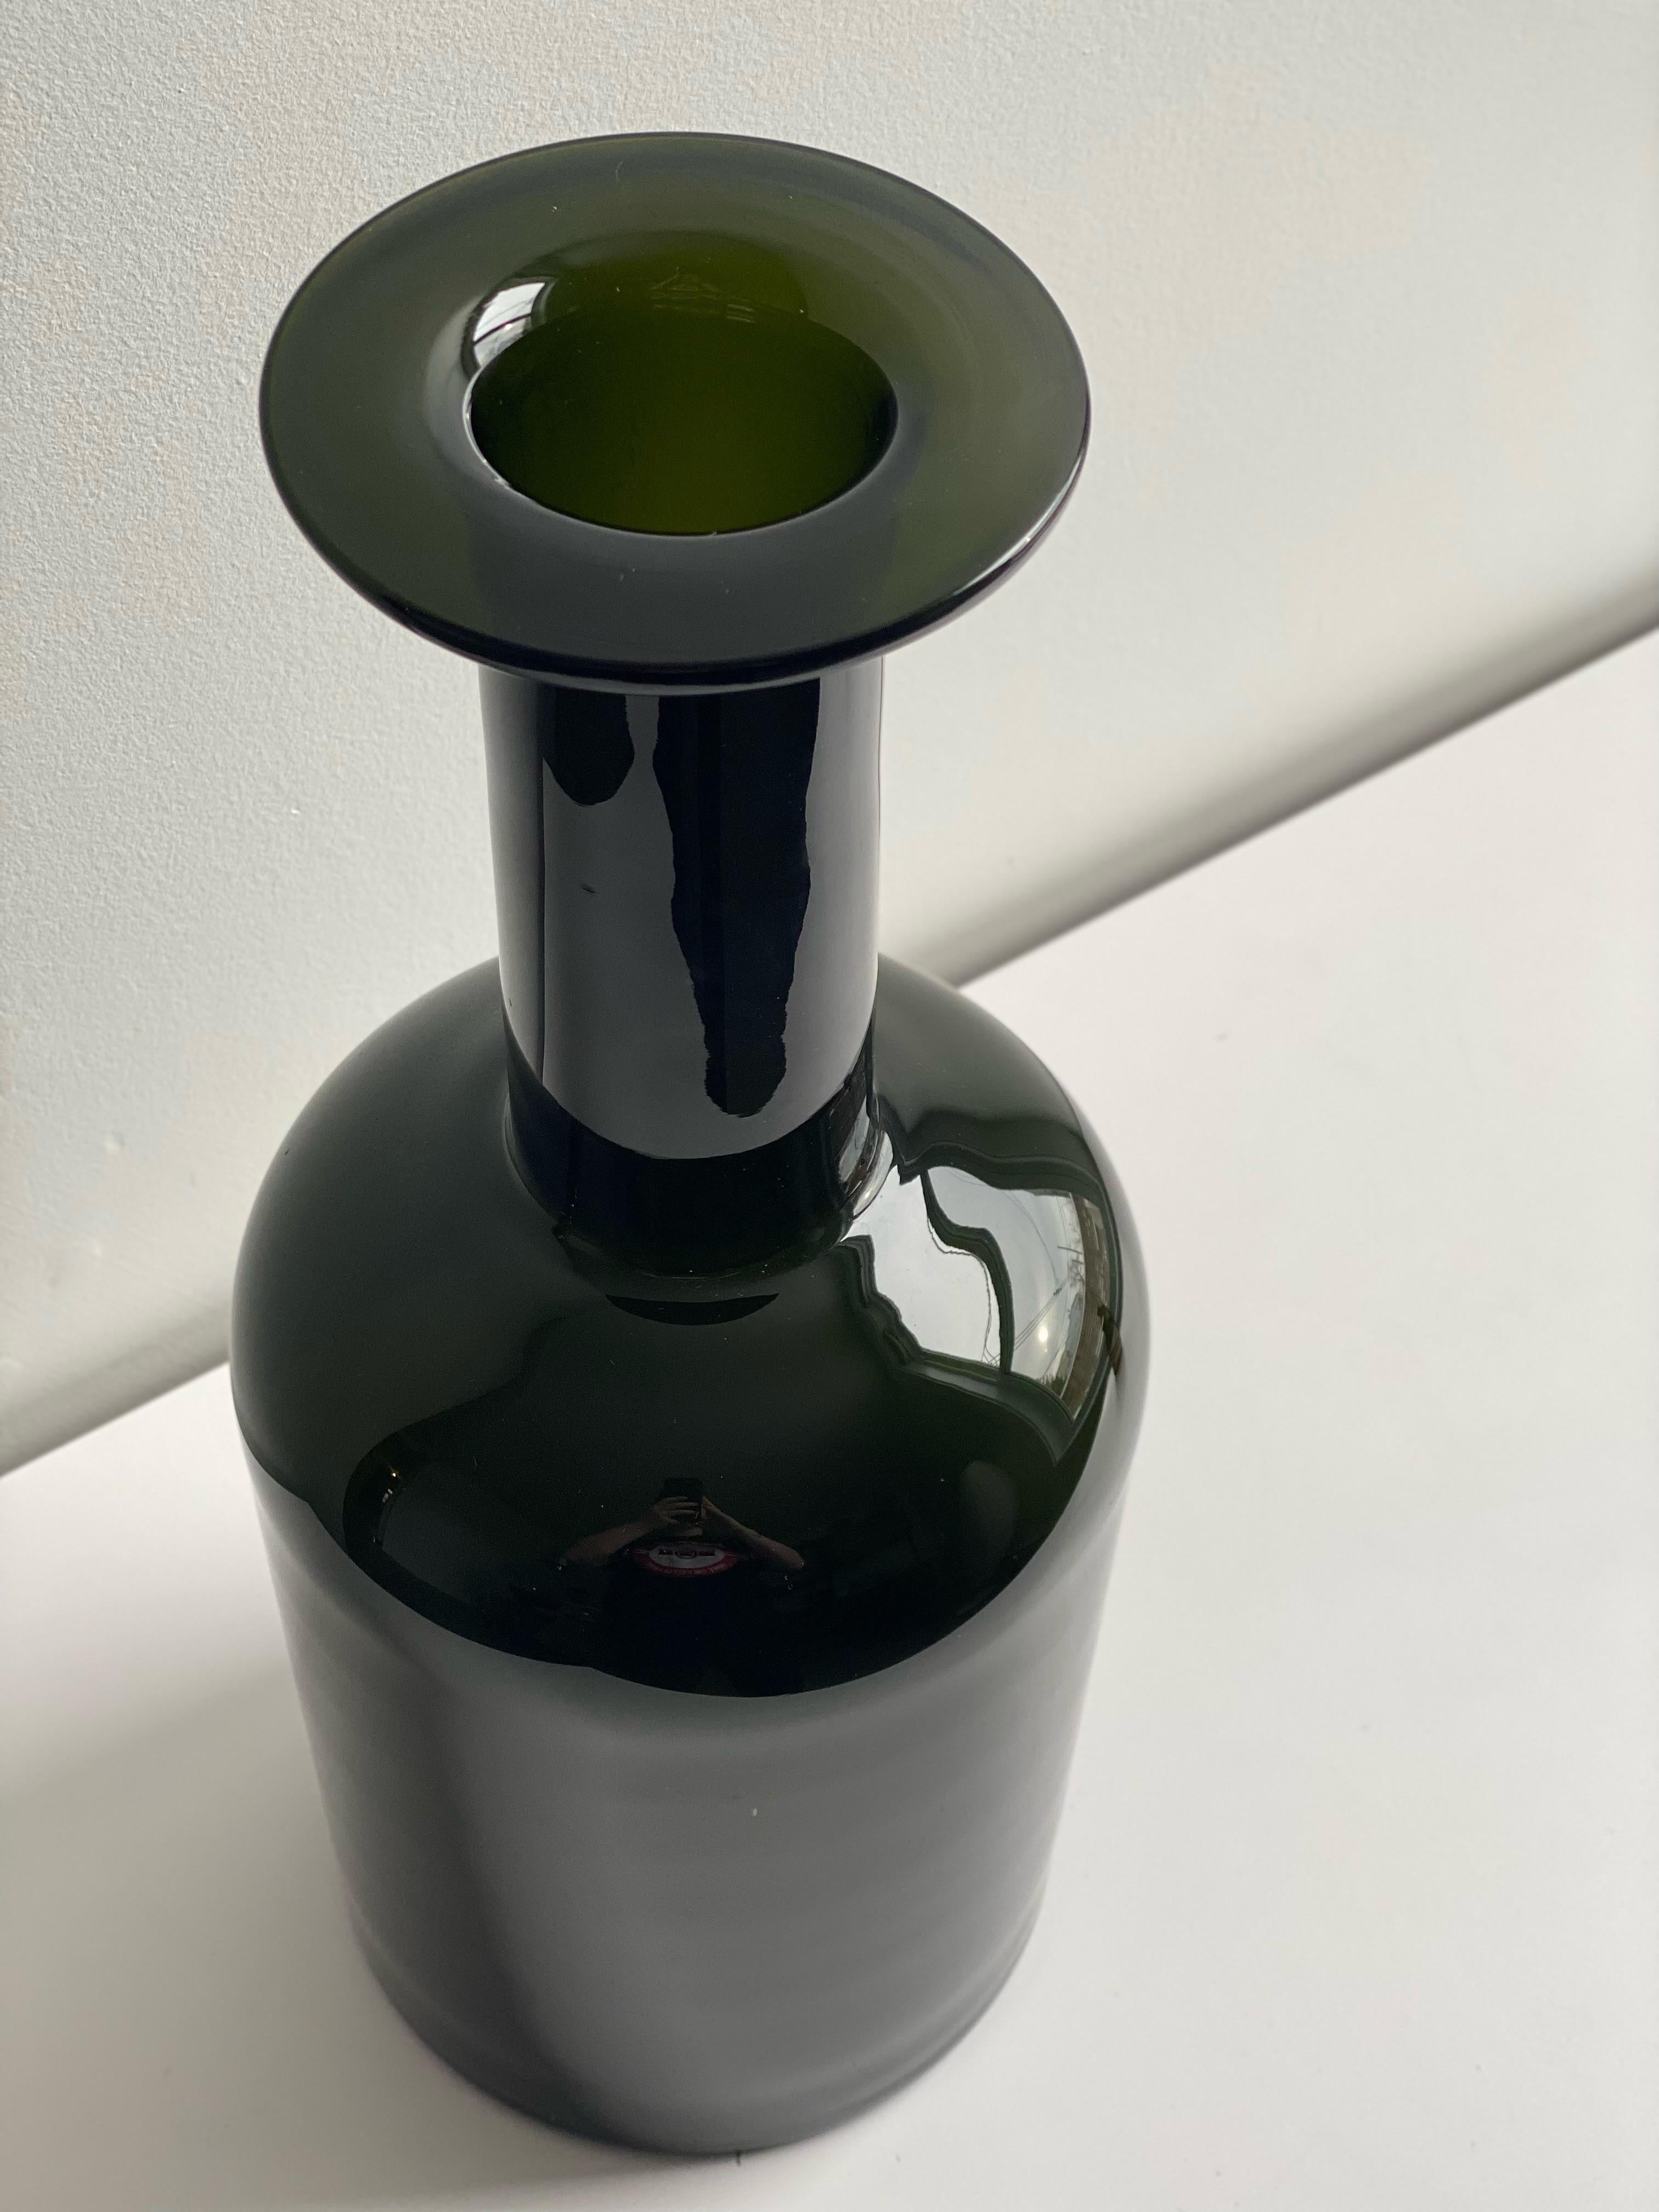 Größte Gulvase von Otto Brauer für Holmegaard, dunkelgrünes mundgeblasenes Glas. In gutem Vintage-Zustand mit einigen kleinen Flecken. 